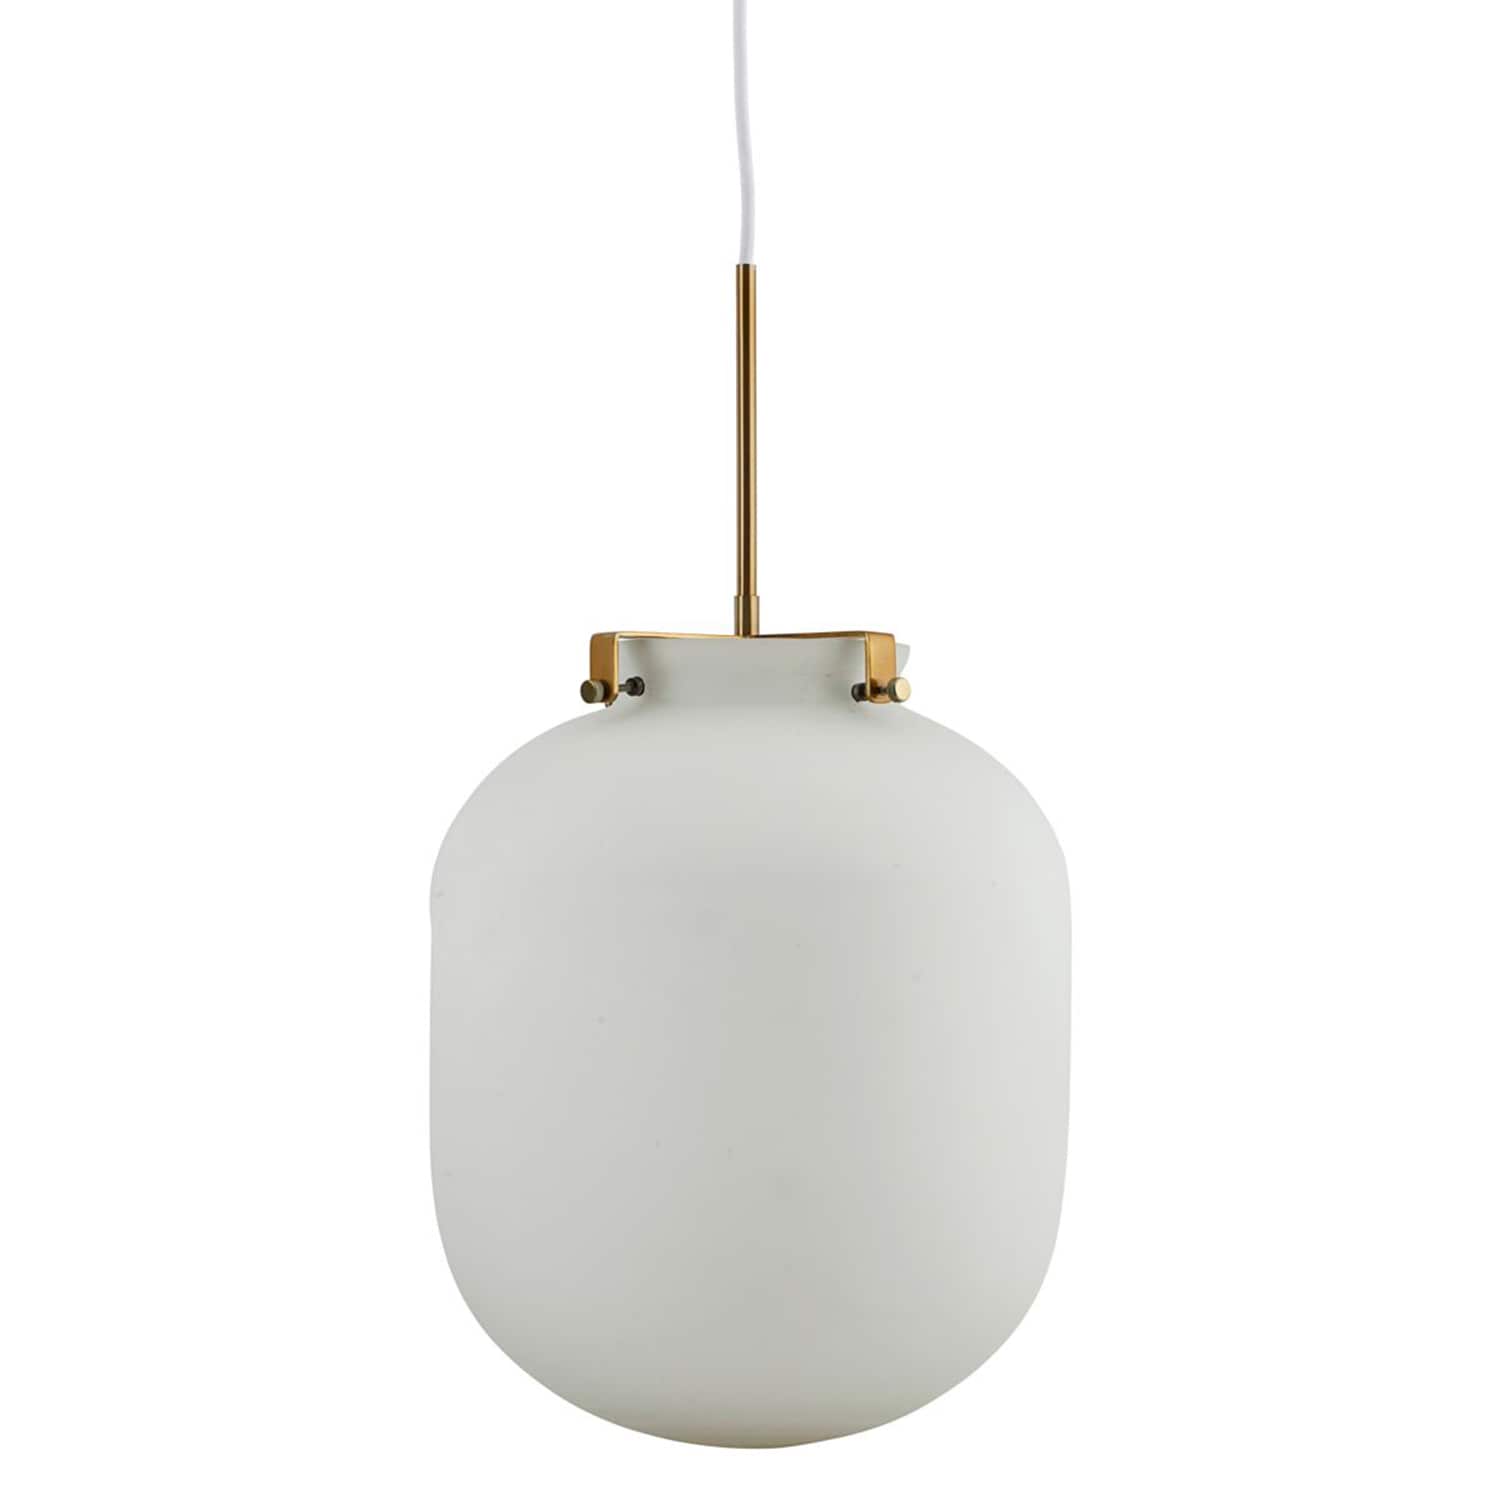 Lampe - Ball - Weiß Lampe von House Doctor